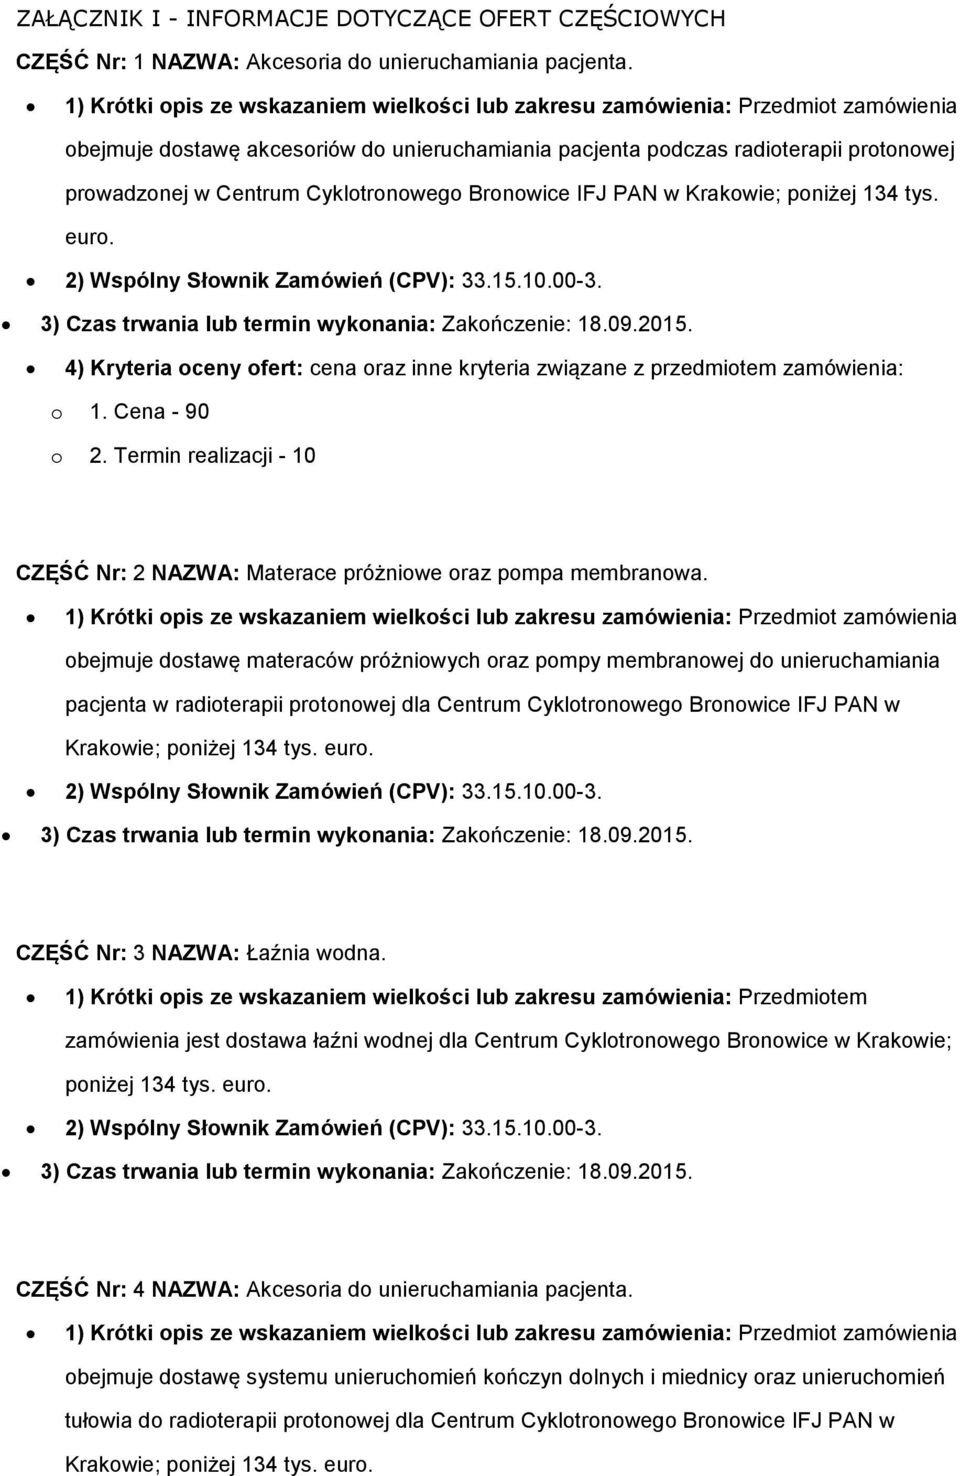 IFJ PAN w Krakwie; pniżej 134 tys. eur. 2) Wspólny Słwnik Zamówień (CPV): 33.15.10.00-3. 3) Czas trwania lub termin wyknania: Zakńczenie: 18.09.2015.